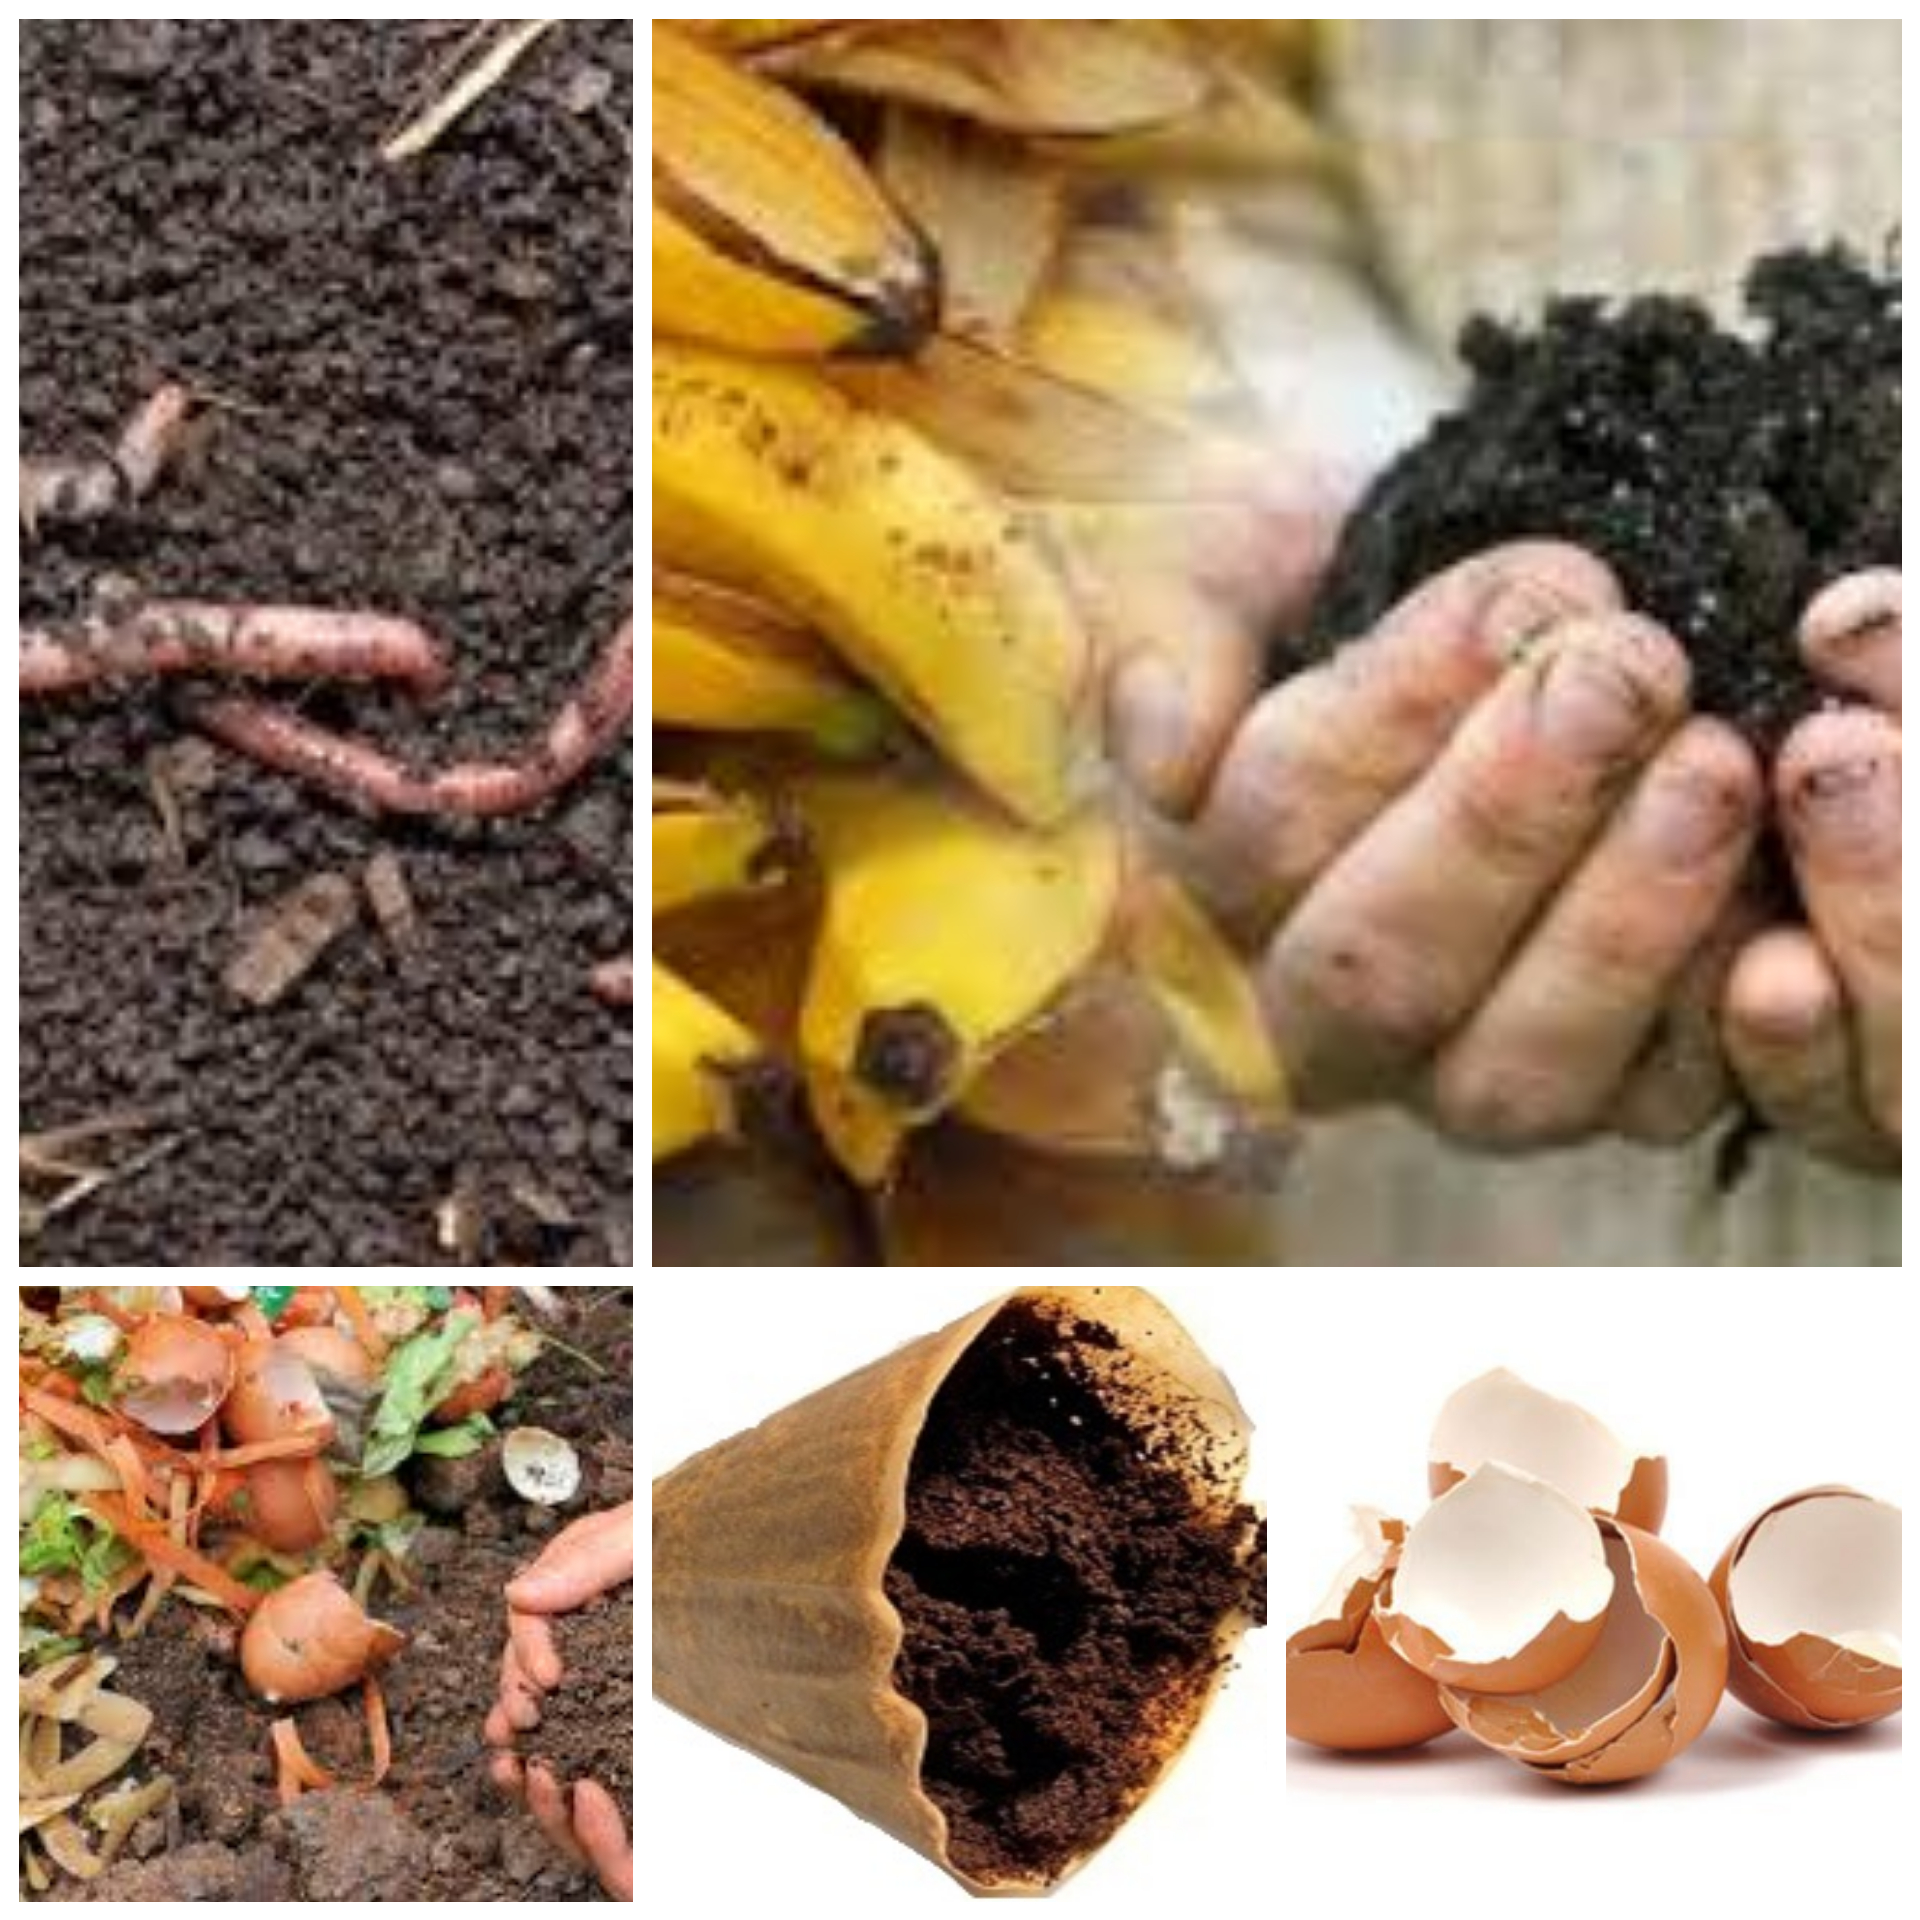 Tierra con abono casero. Fertilizante orgánico natural con cáscara de banana, huevo, lombrices y restos de café